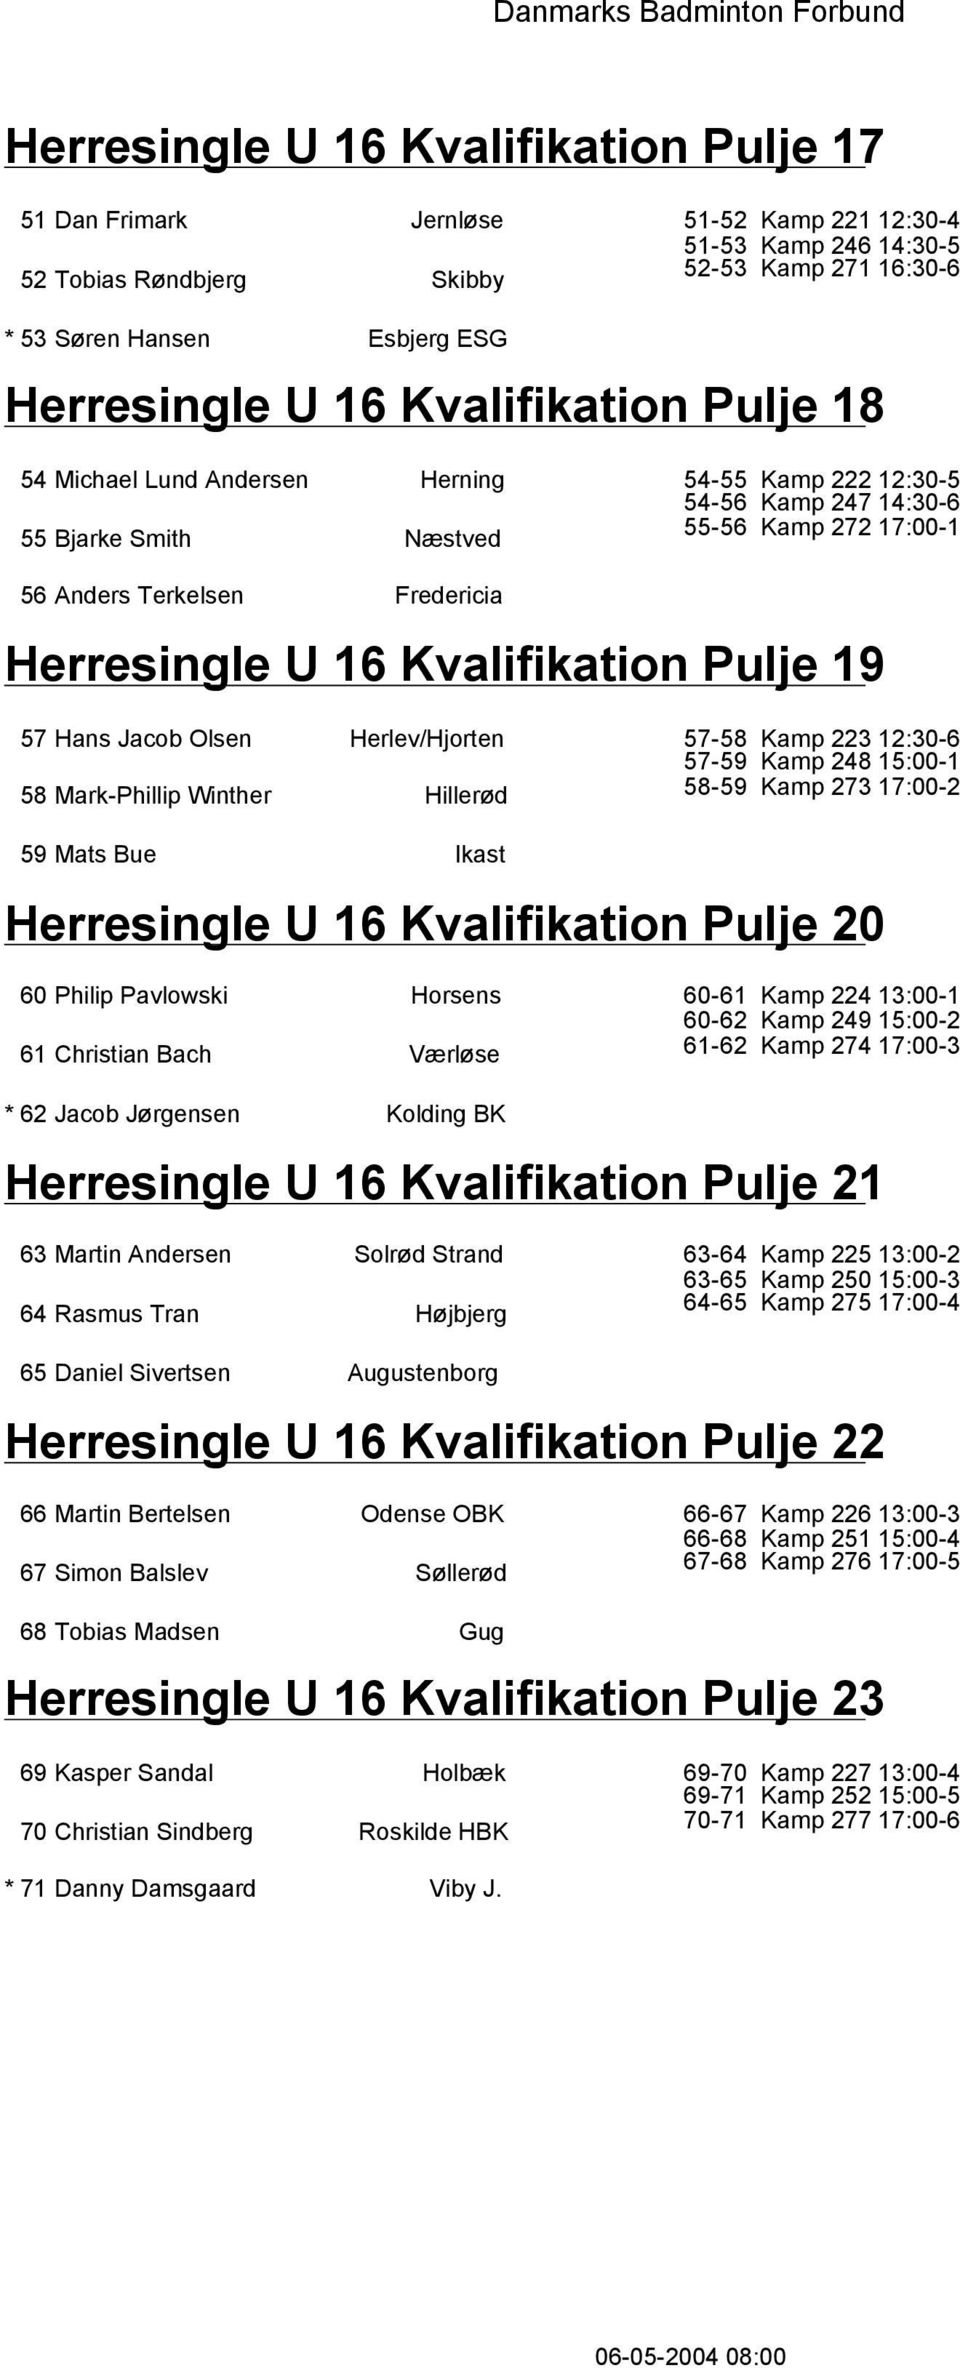 Herresingle U 16 Kvalifikation Pulje 19 57 Hans Jacob Olsen Herlev/Hjorten 58 Mark-Phillip Winther Hillerød 57-58 Kamp 223 12:30-6 57-59 Kamp 248 15:00-1 58-59 Kamp 273 17:00-2 59 Mats Bue Ikast